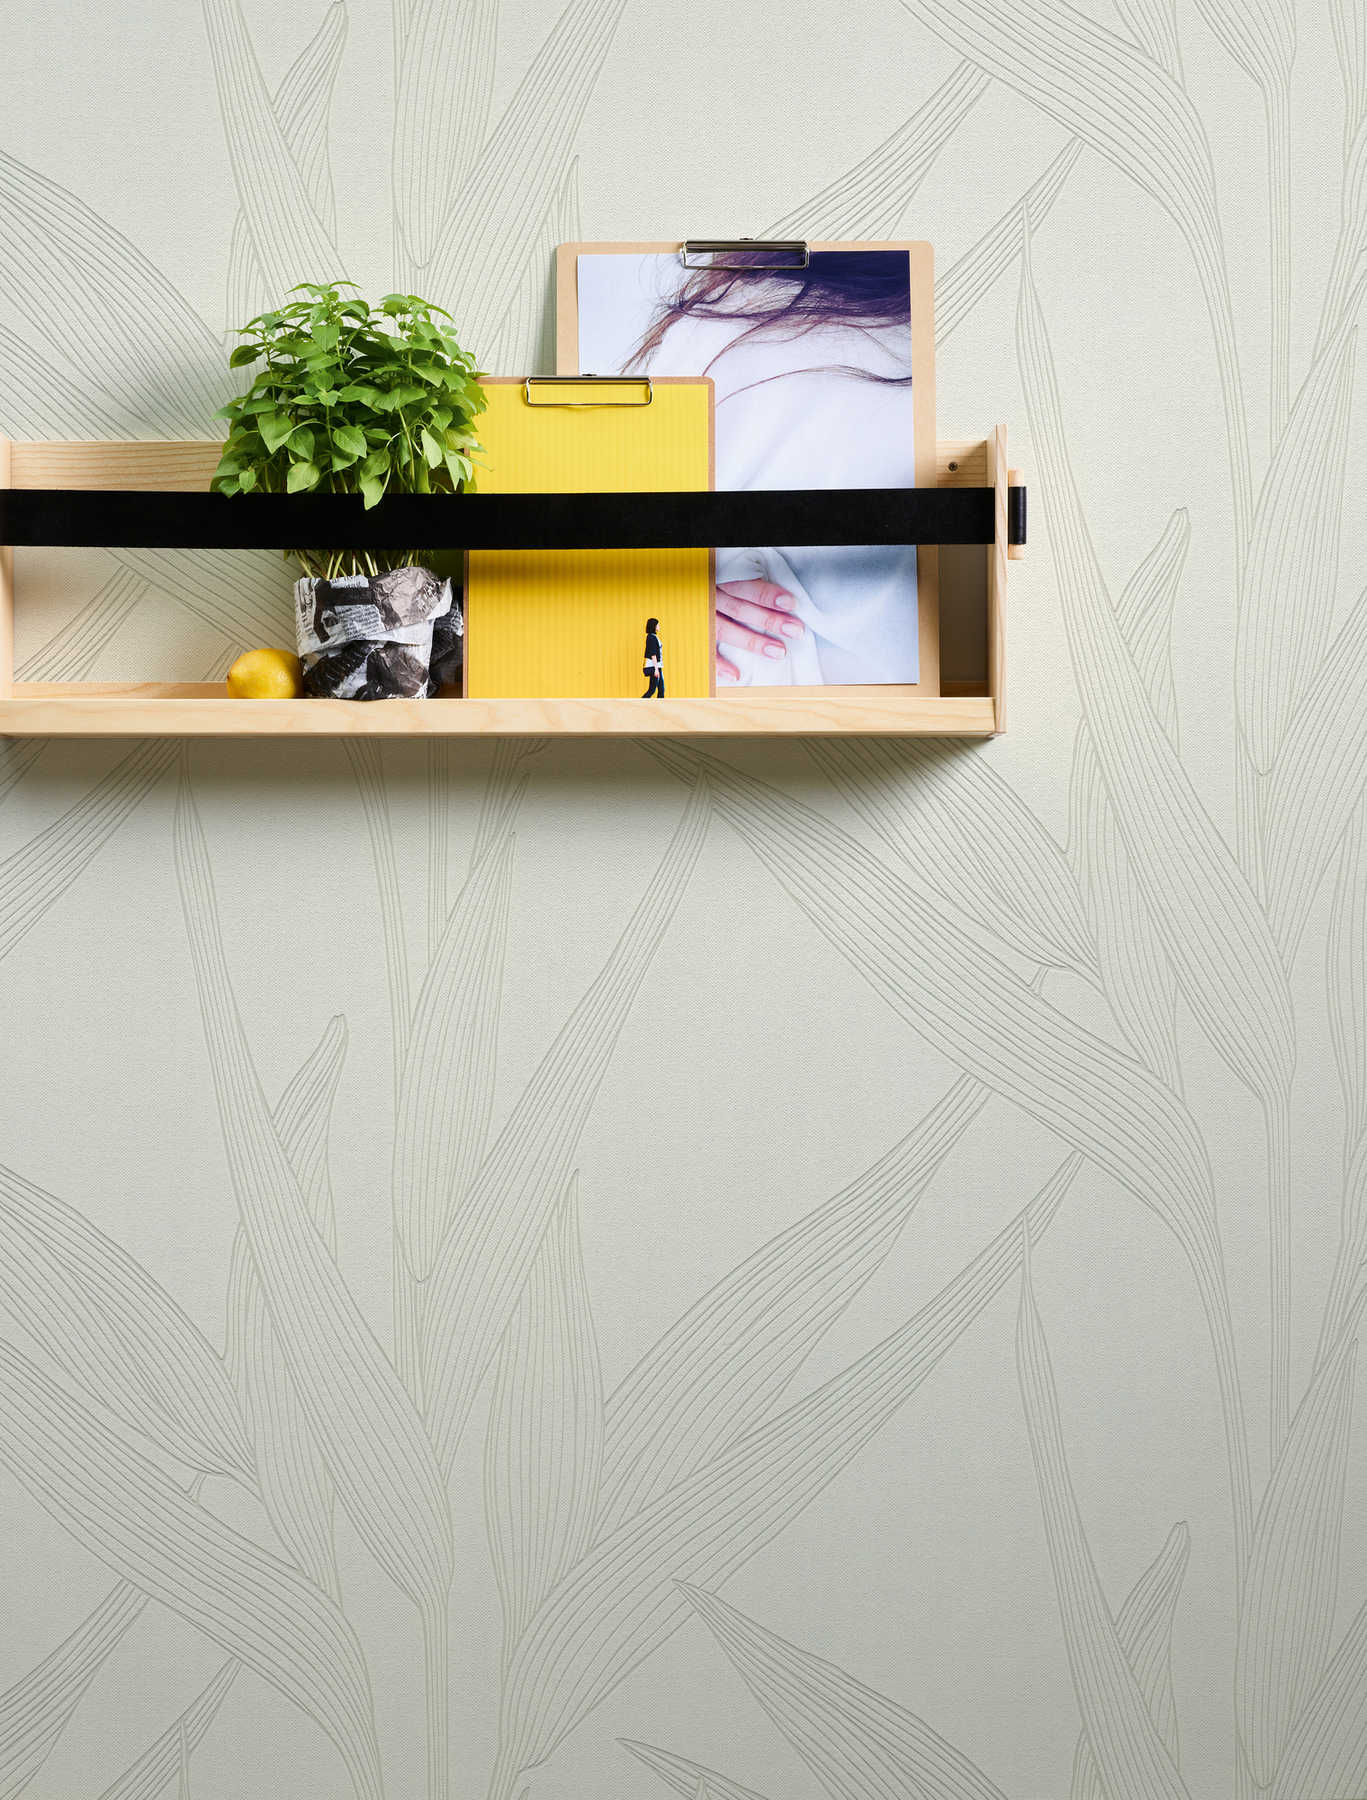             Strukturtapete mit Blätter Design – Beige, Weiß
        